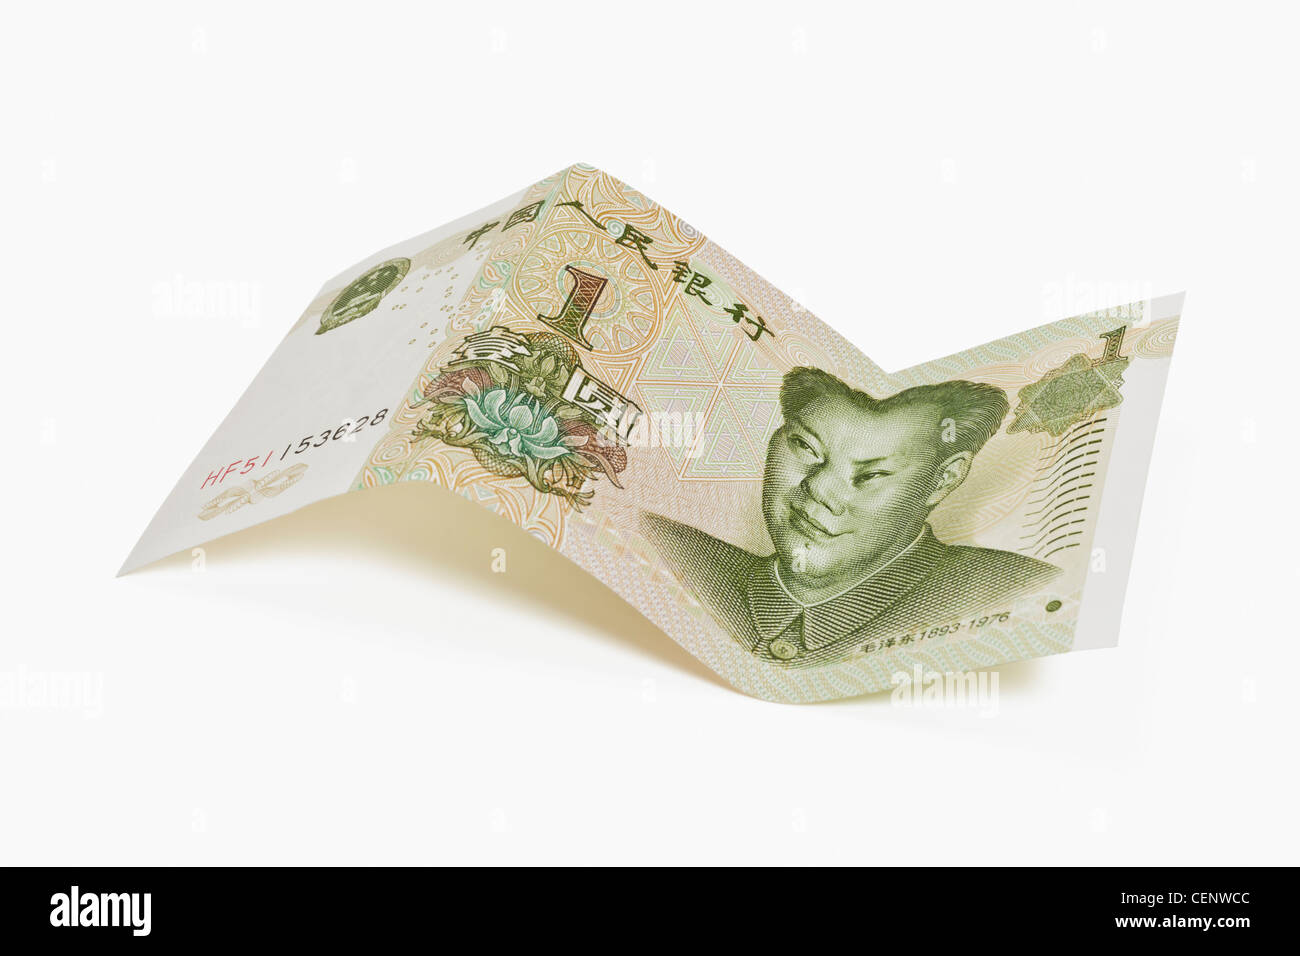 1 yuan bill avec le portrait de Mao Zedong. Le renminbi, la monnaie chinoise, a été introduit en 1949. Banque D'Images